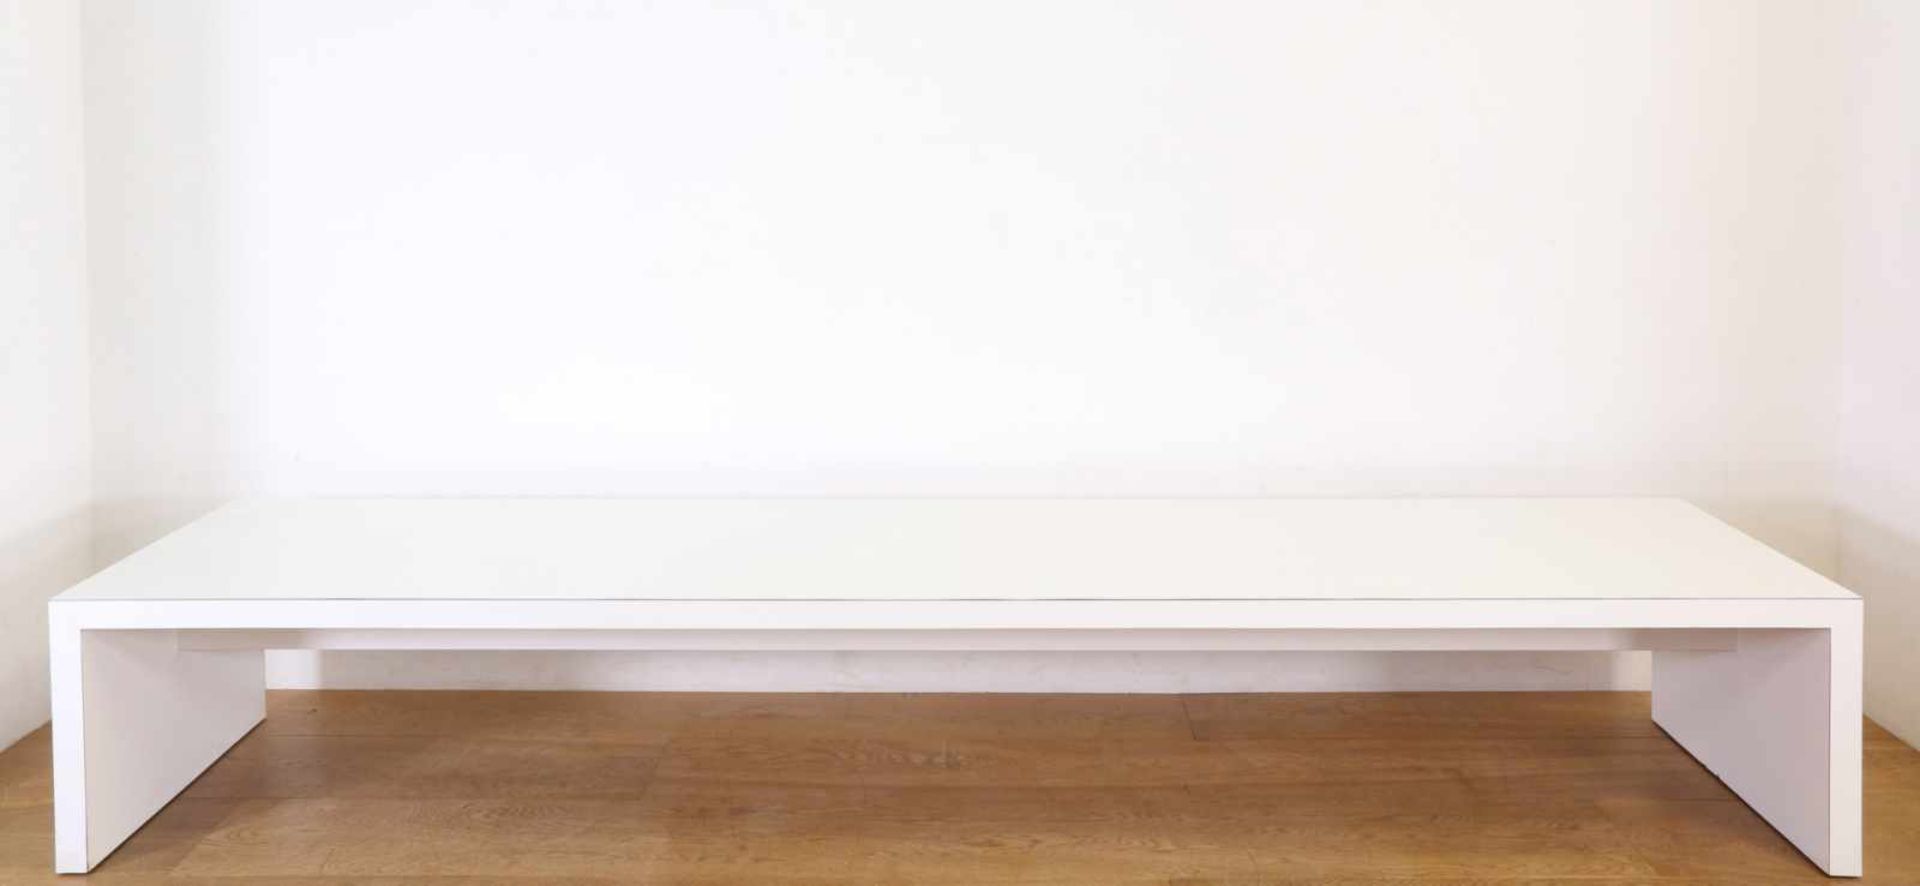 Langwerpige houten salontafelmet wit formica toplaag (besch. aan poot), 228 x 60 en h. 35 cm [1]400